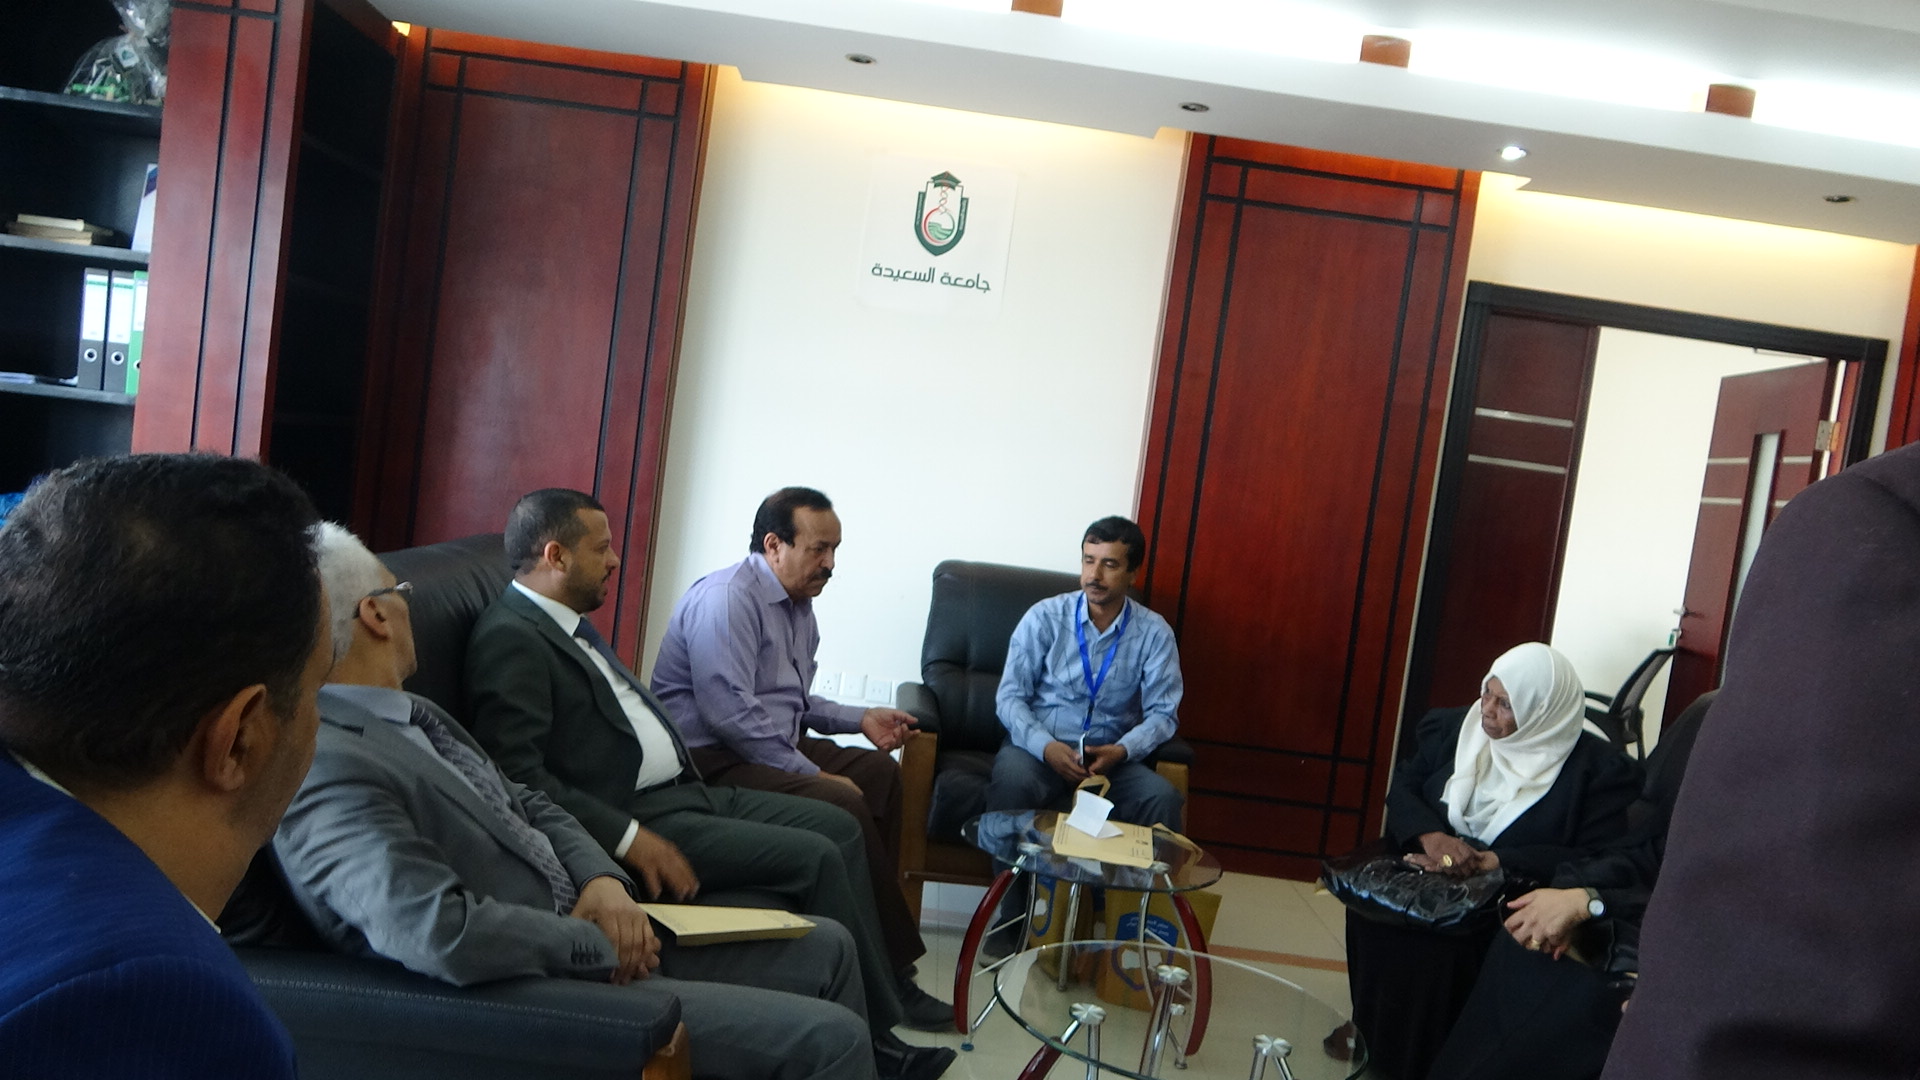 مجلس الاعتماد الأكاديمي : فريق لمتابعة البرامج الأكاديمية من مجلس الاعتماد الأكاديمي يقوم بزيارة لجامعة السعيدة صنعاء